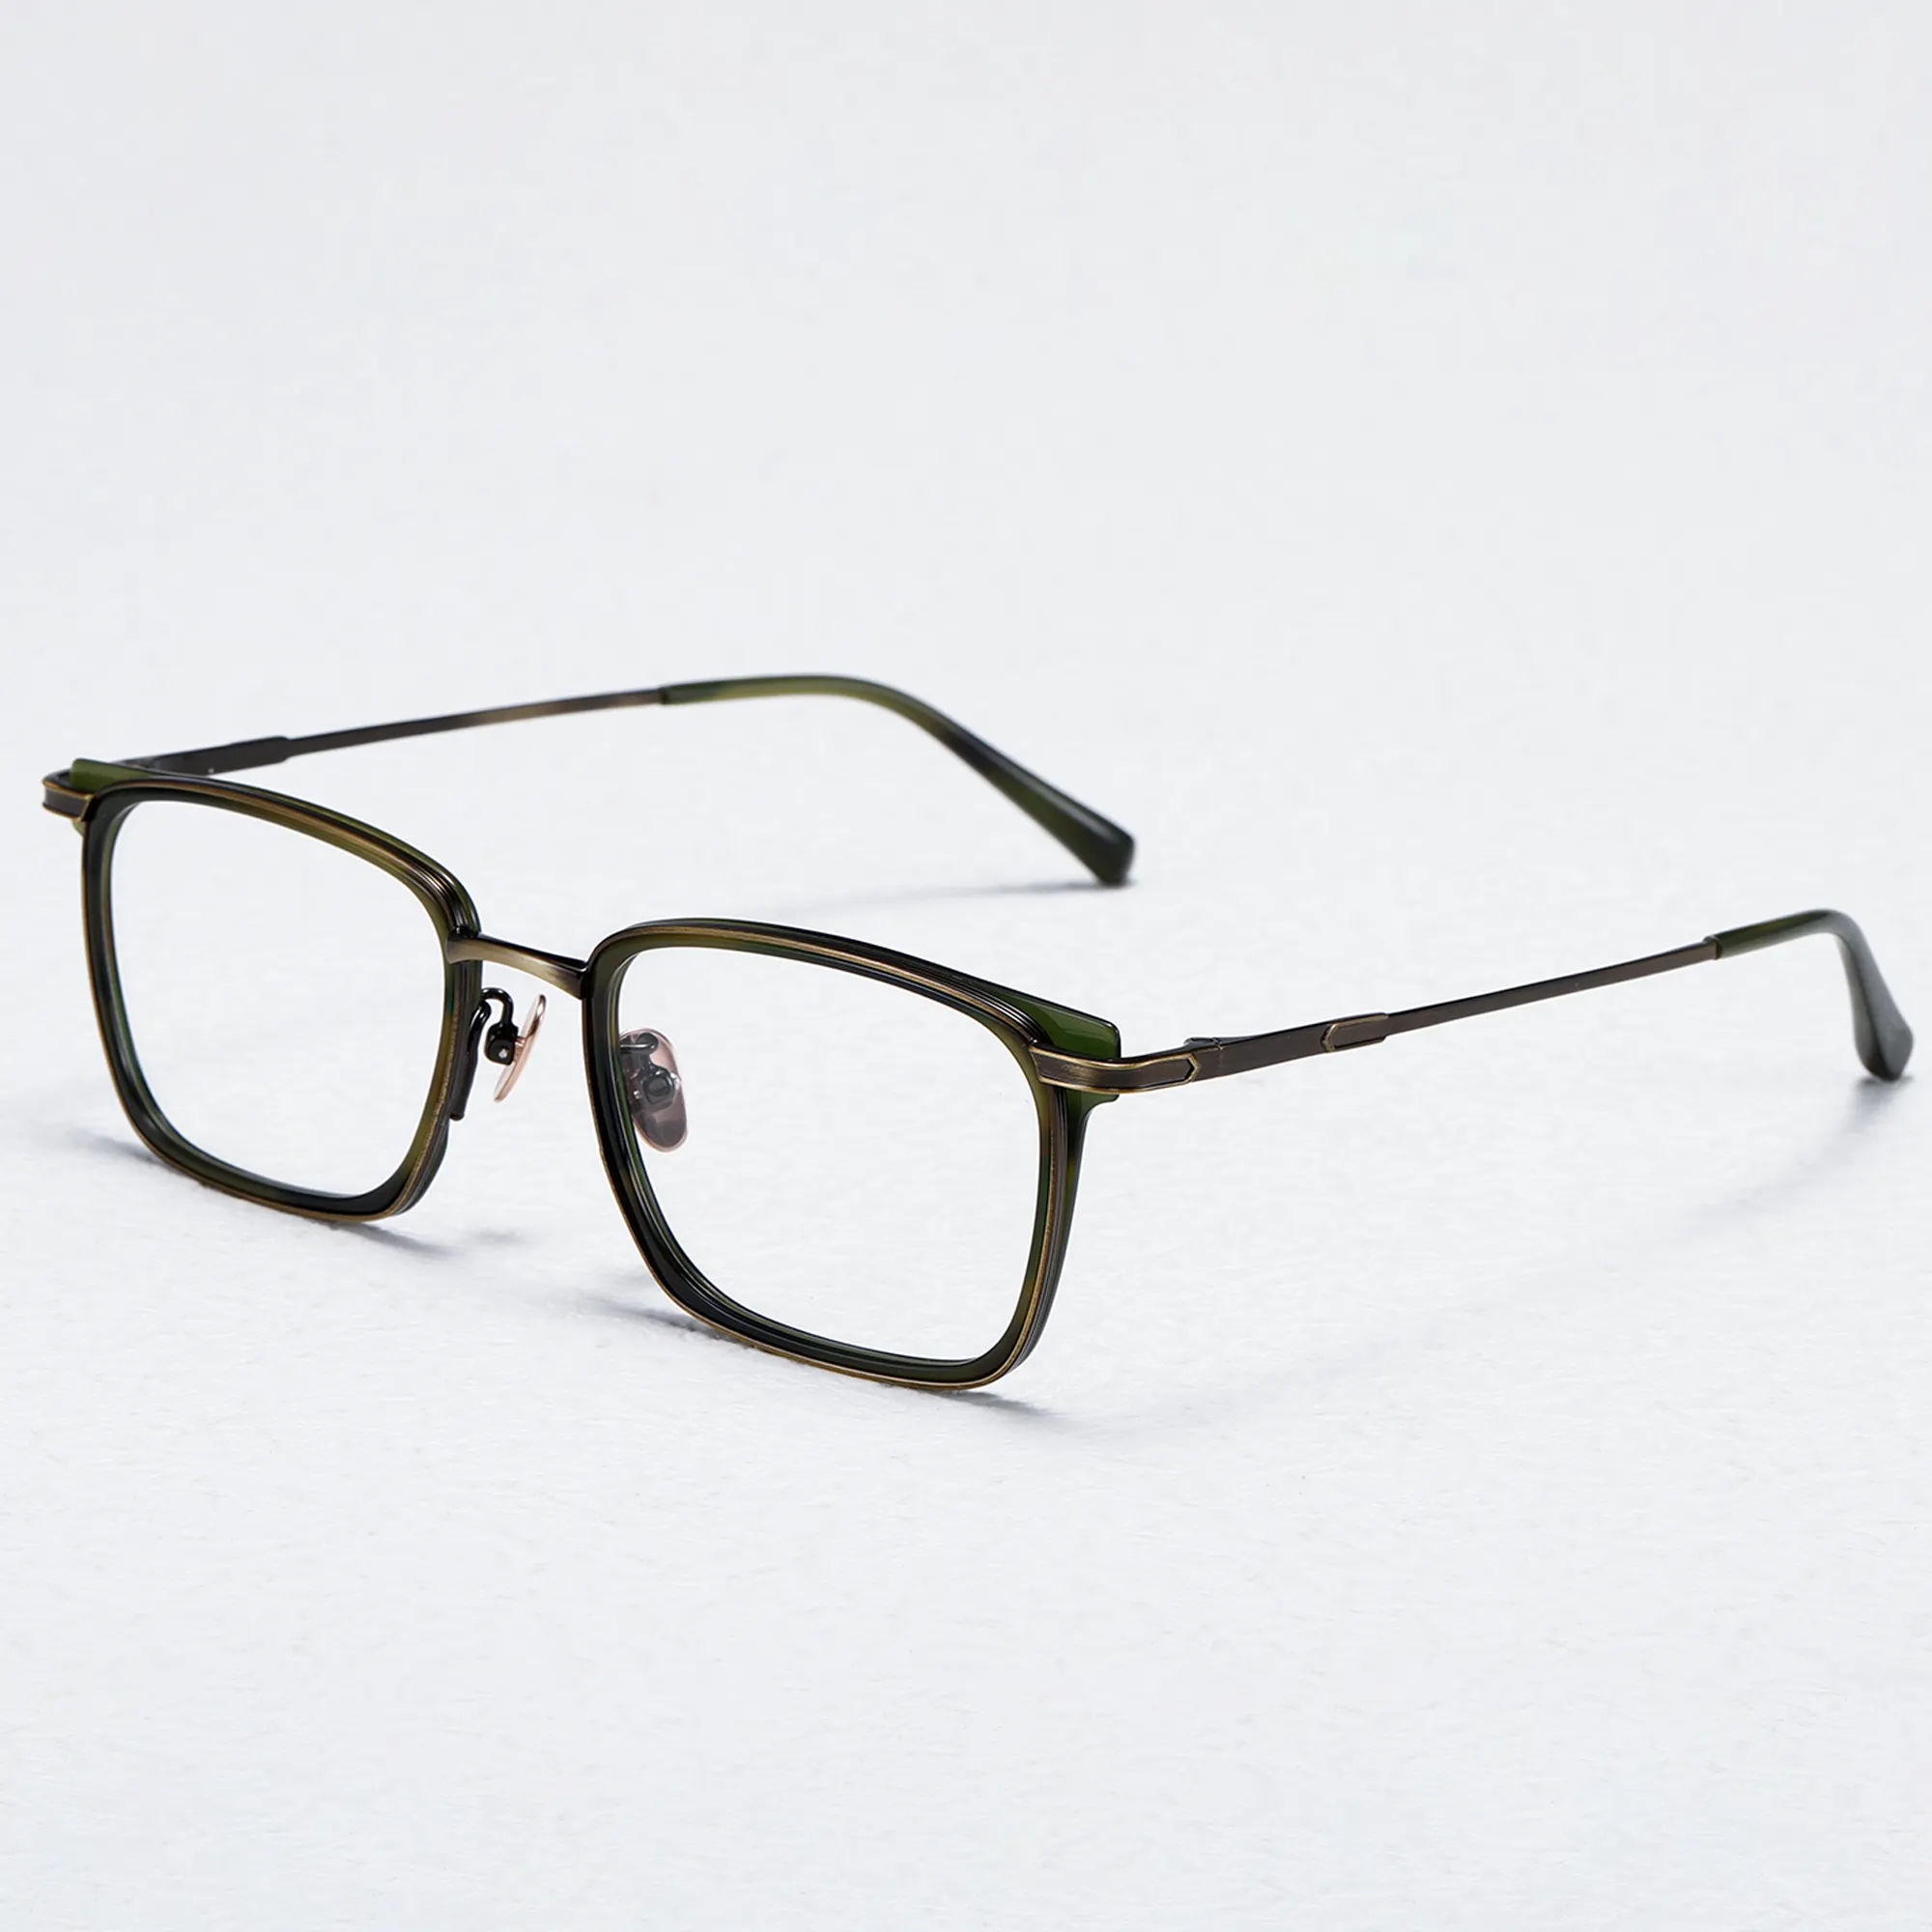 Fabricant de lunettes carrées en métal Figrad avec coussinets nasaux confortables montures de lunettes en métal lunettes optiques